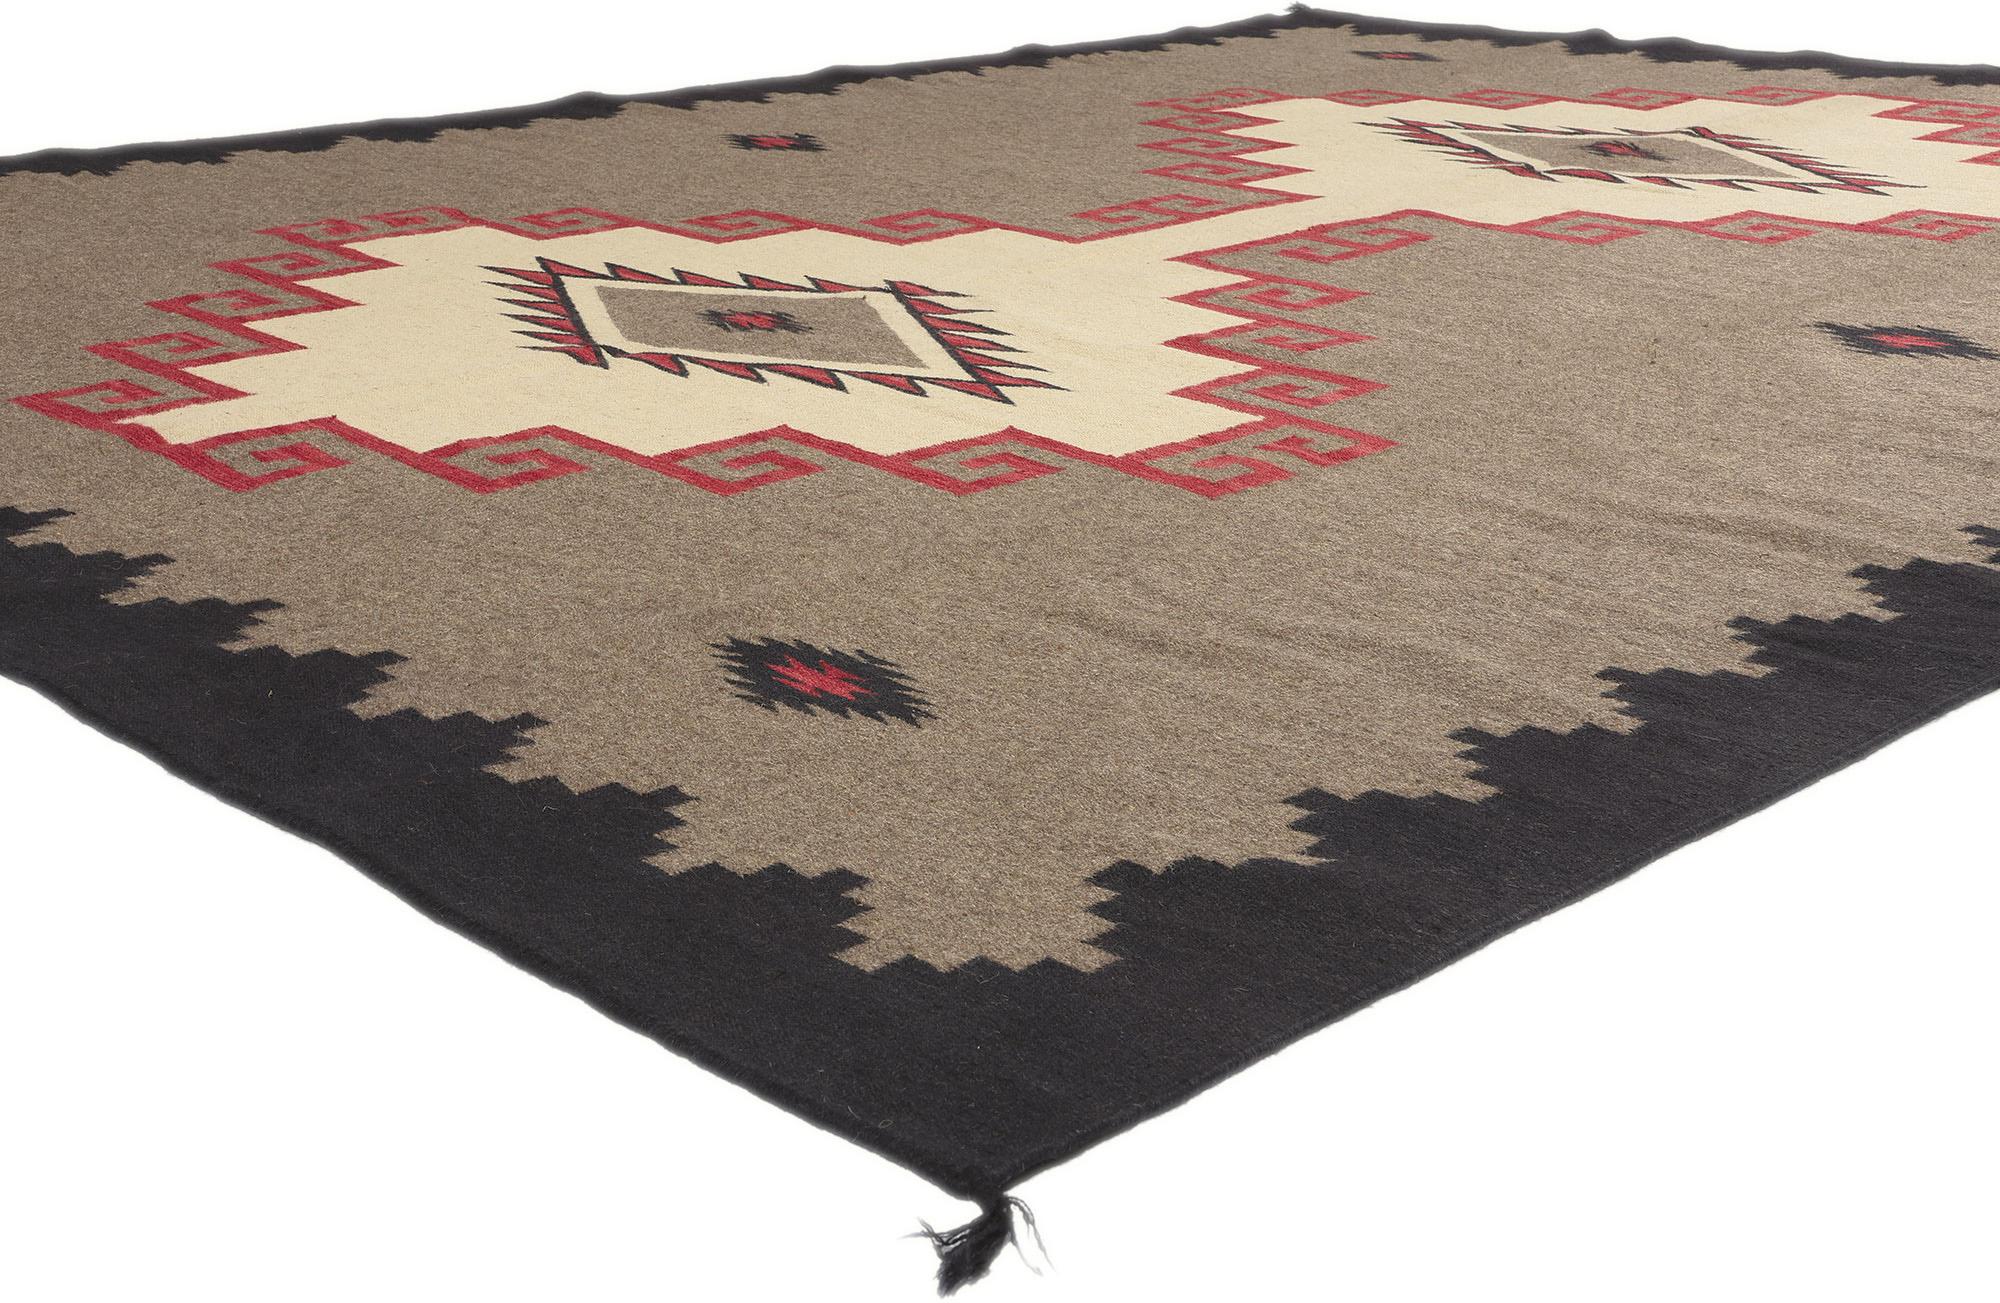 81030 Southwest Modern Ganado Navajo-Stil Teppich, 09'00 x 11'10. Tauchen Sie Ihren Wohnbereich in die Essenz der modernen Ästhetik des Südwestens mit diesem sorgfältig handgewebten Wollteppich im Ganado Navajo-Stil - ein Zeugnis der harmonischen